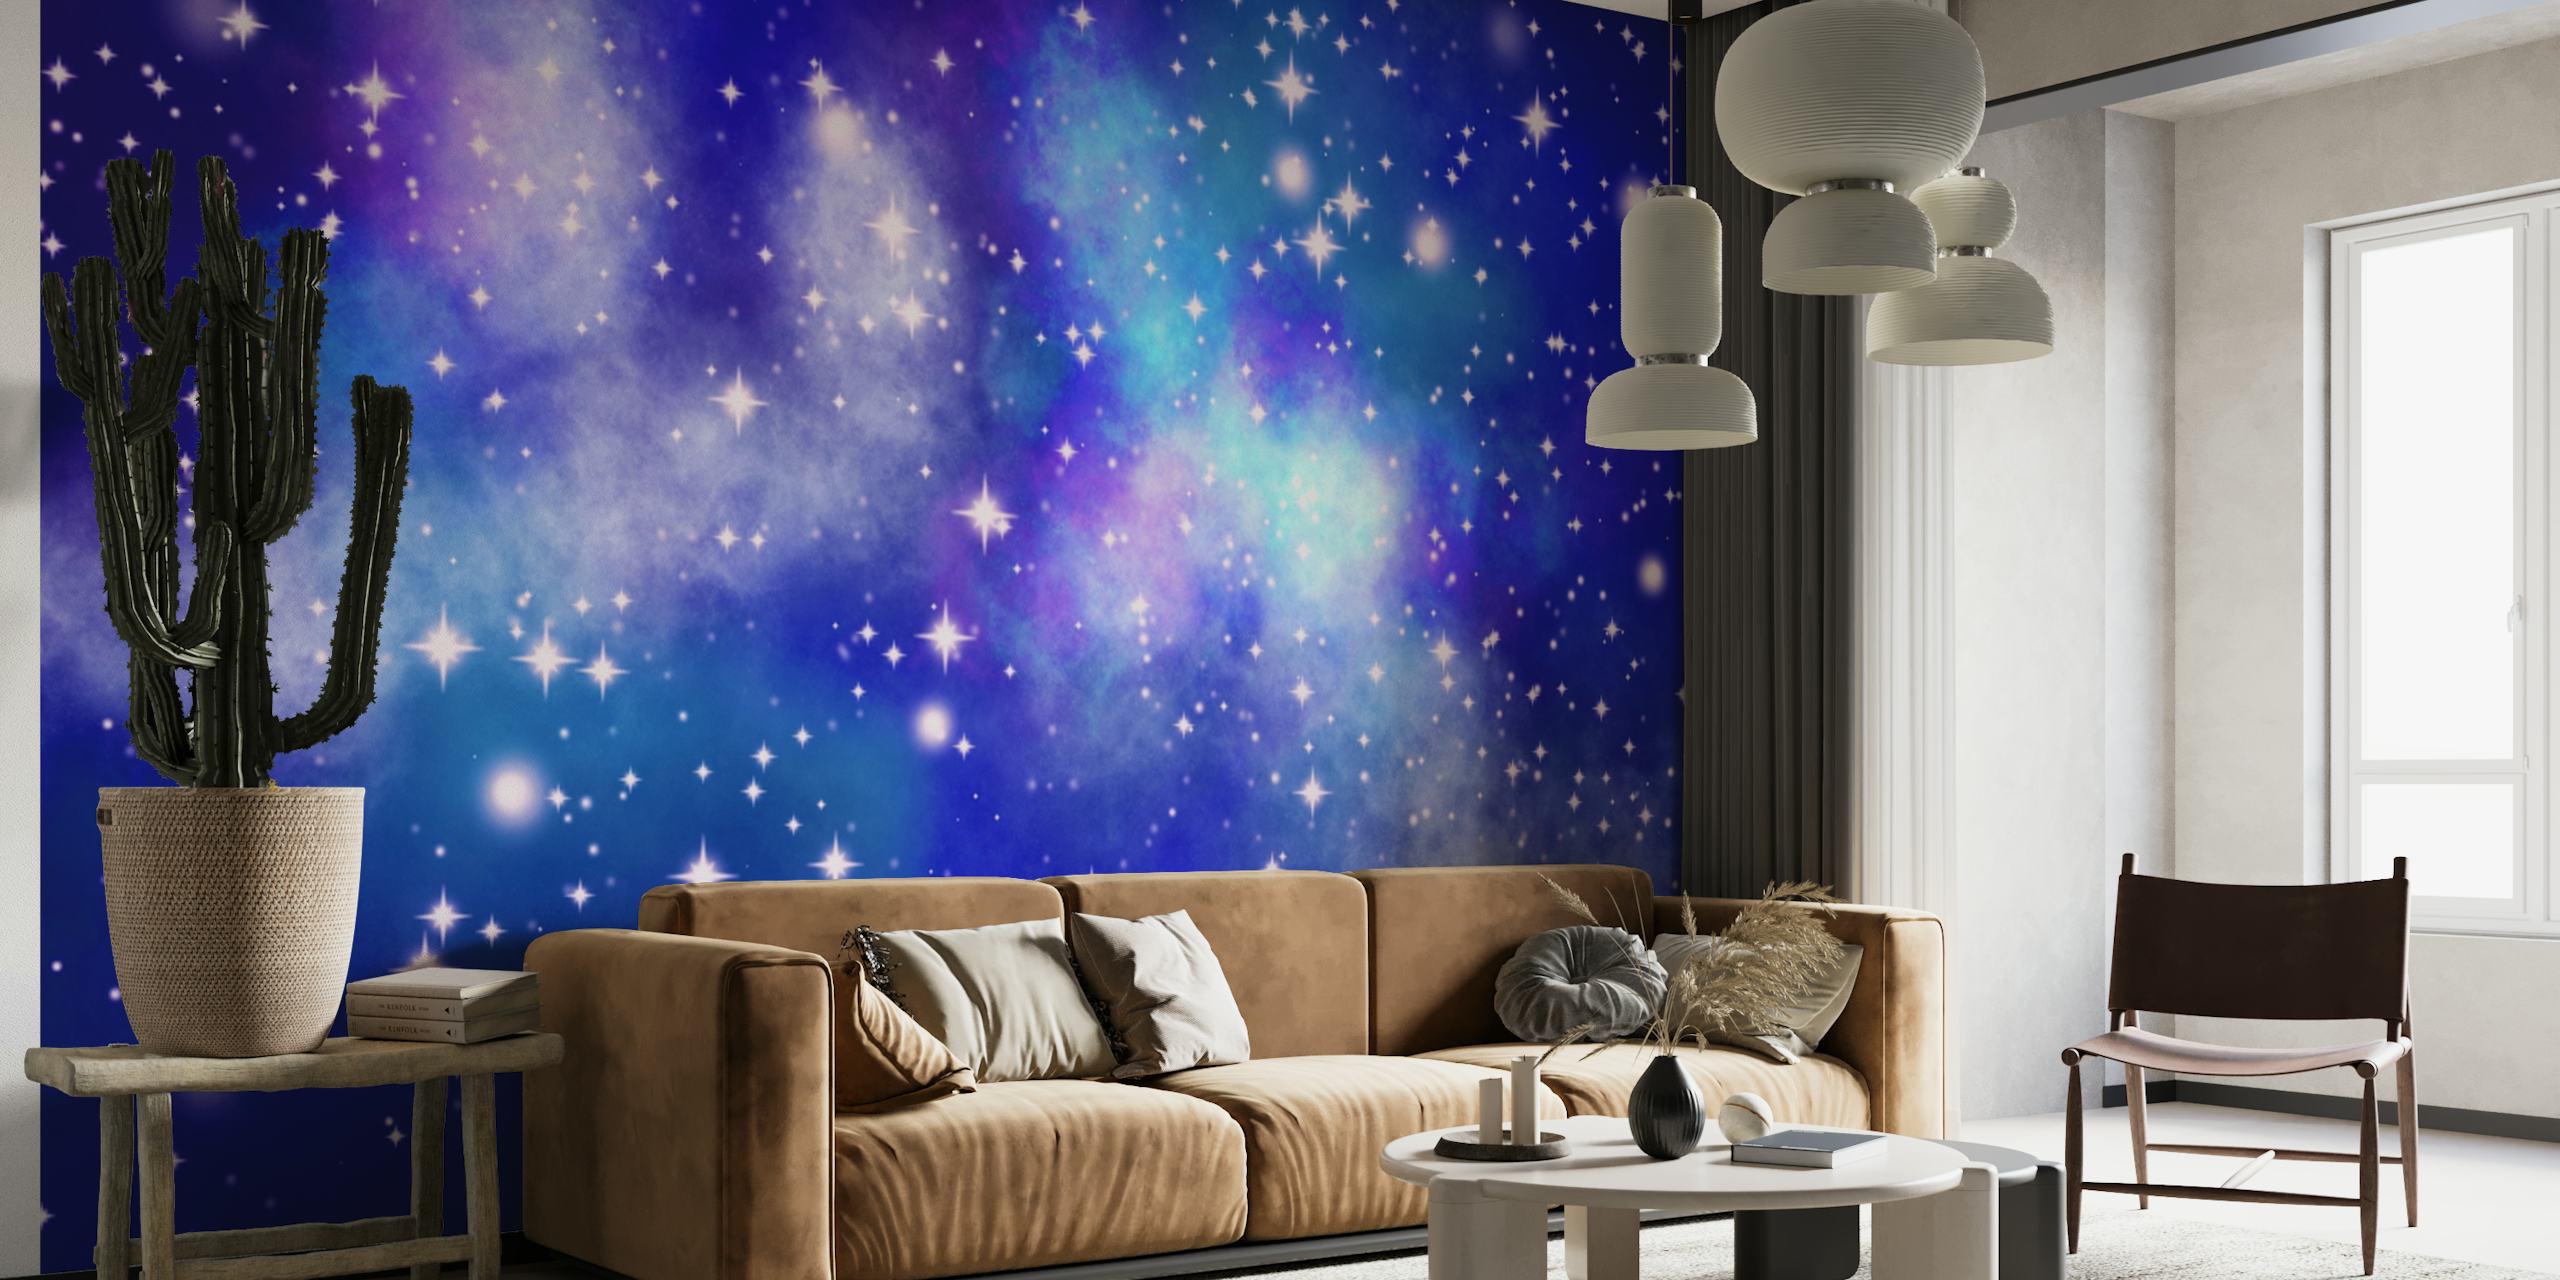 Fototapeta Hvězdná noční obloha s různými odstíny modré a blikajícími hvězdami představujícími pohled na galaxii